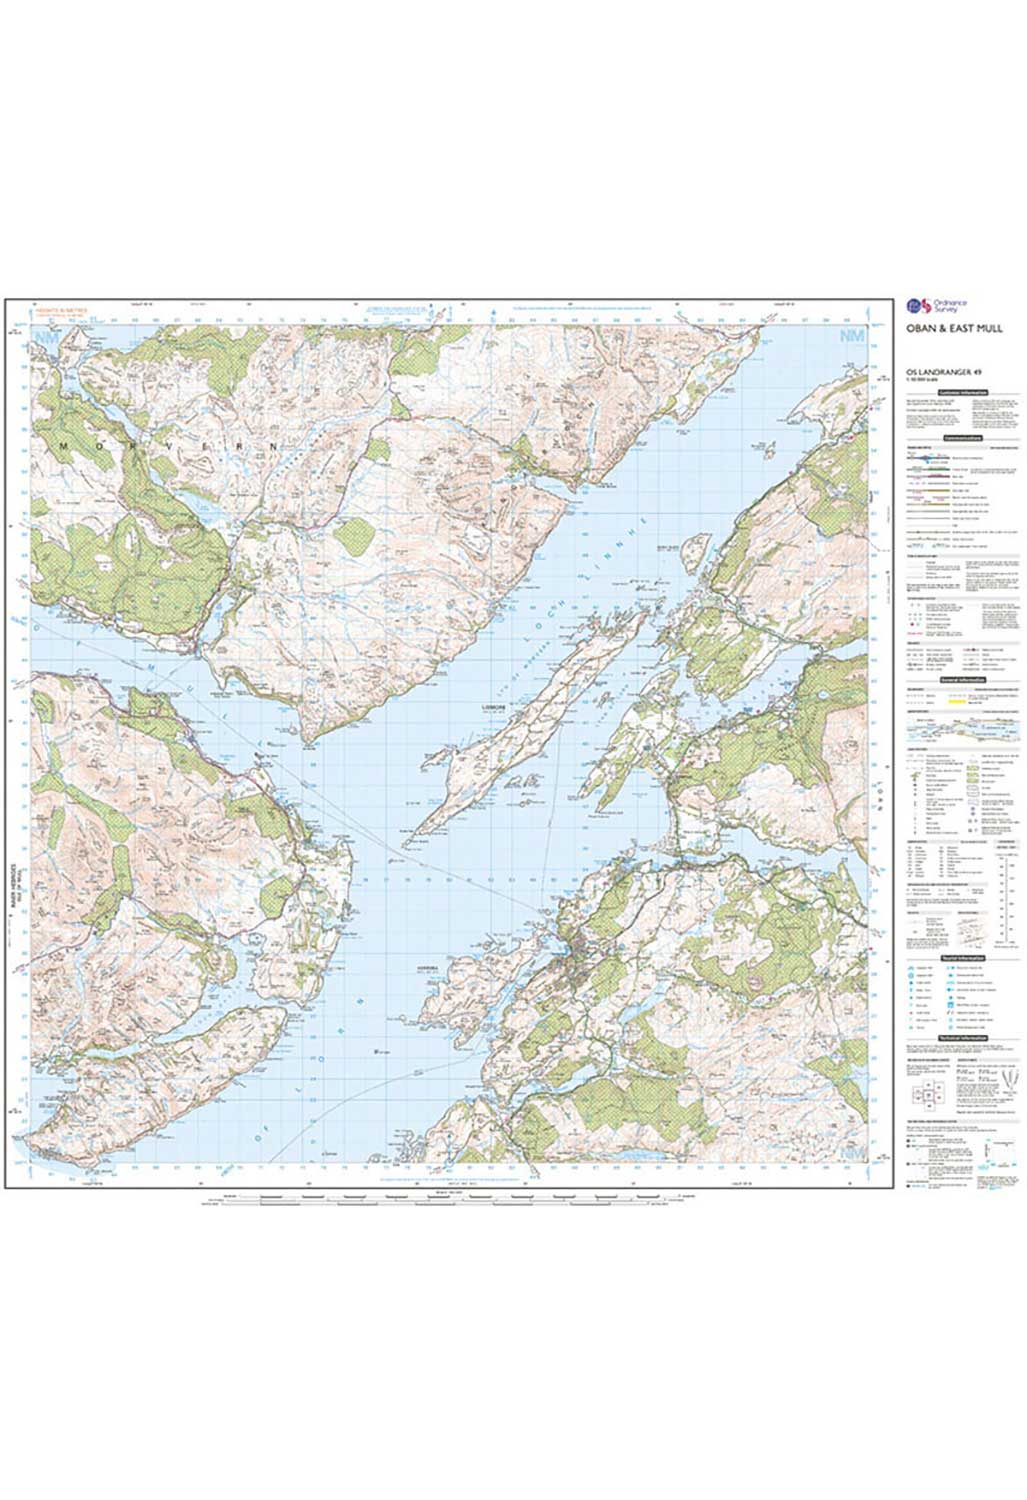 Ordnance Survey Oban & East Mull - Landranger 49 Map